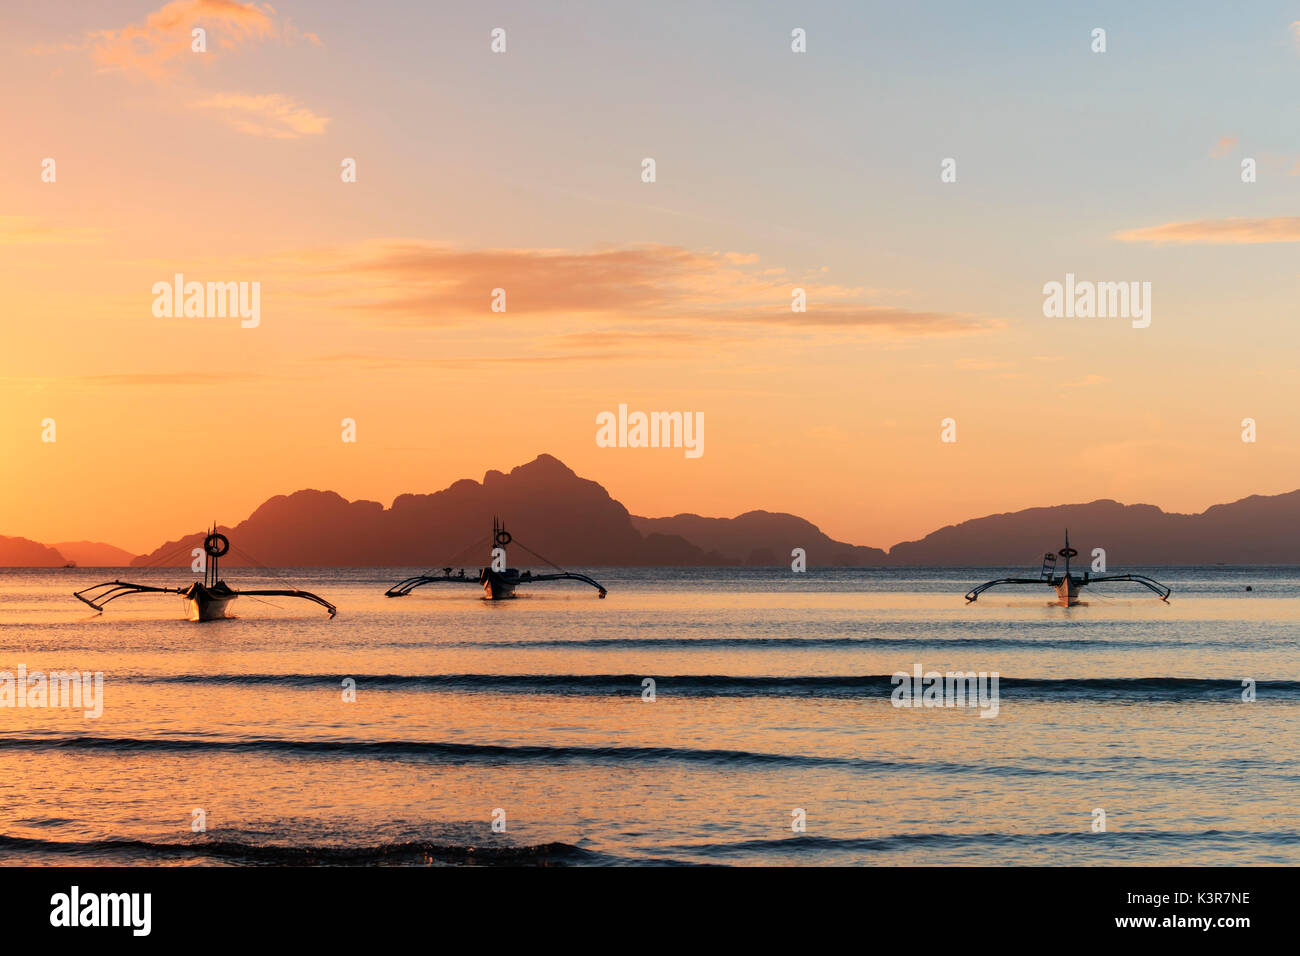 Sunset at Corong Corong beach, Palawan, Philippines Stock Photo